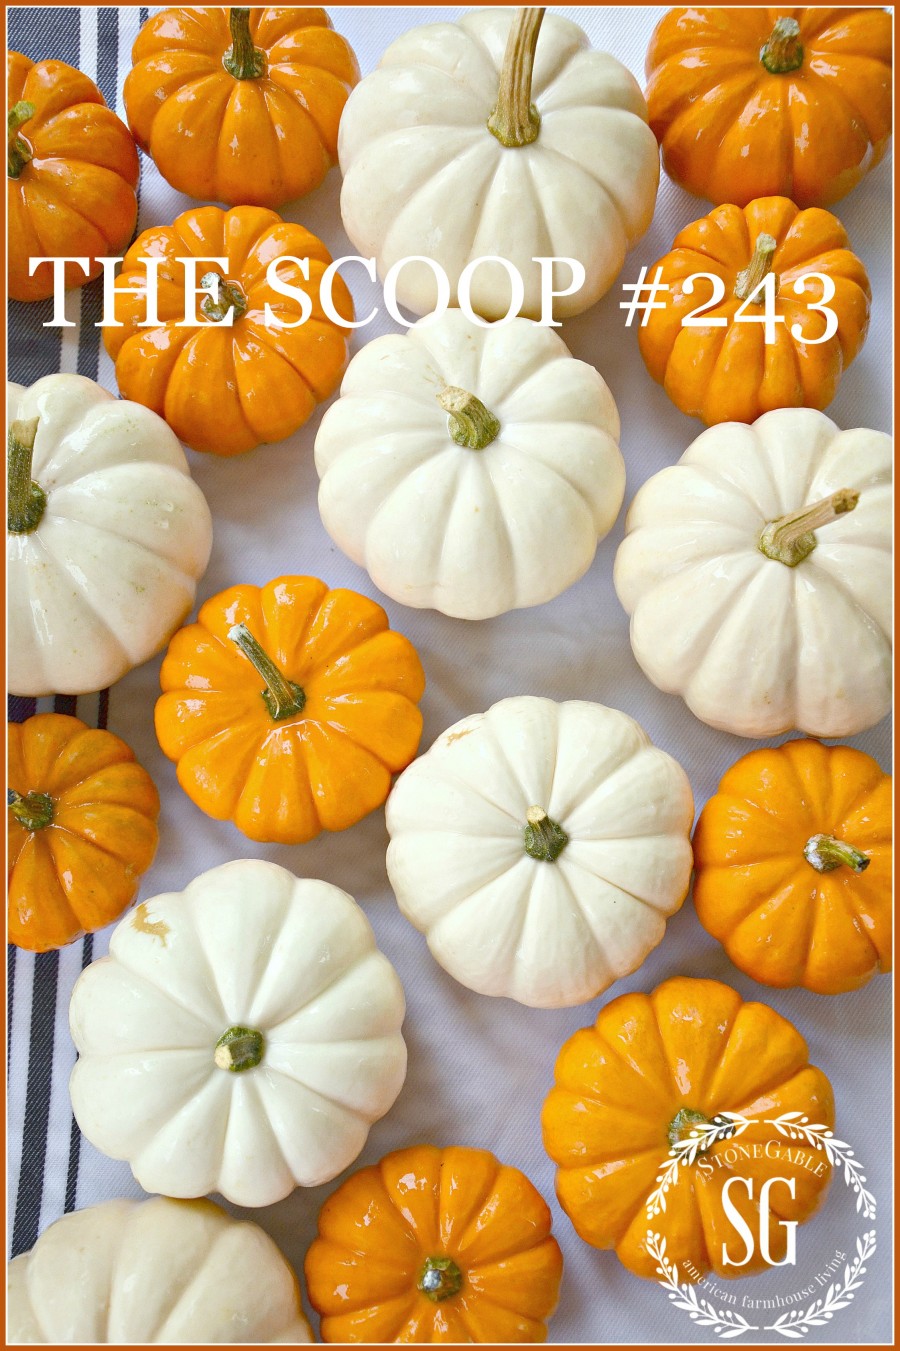 THE SCOOP #243